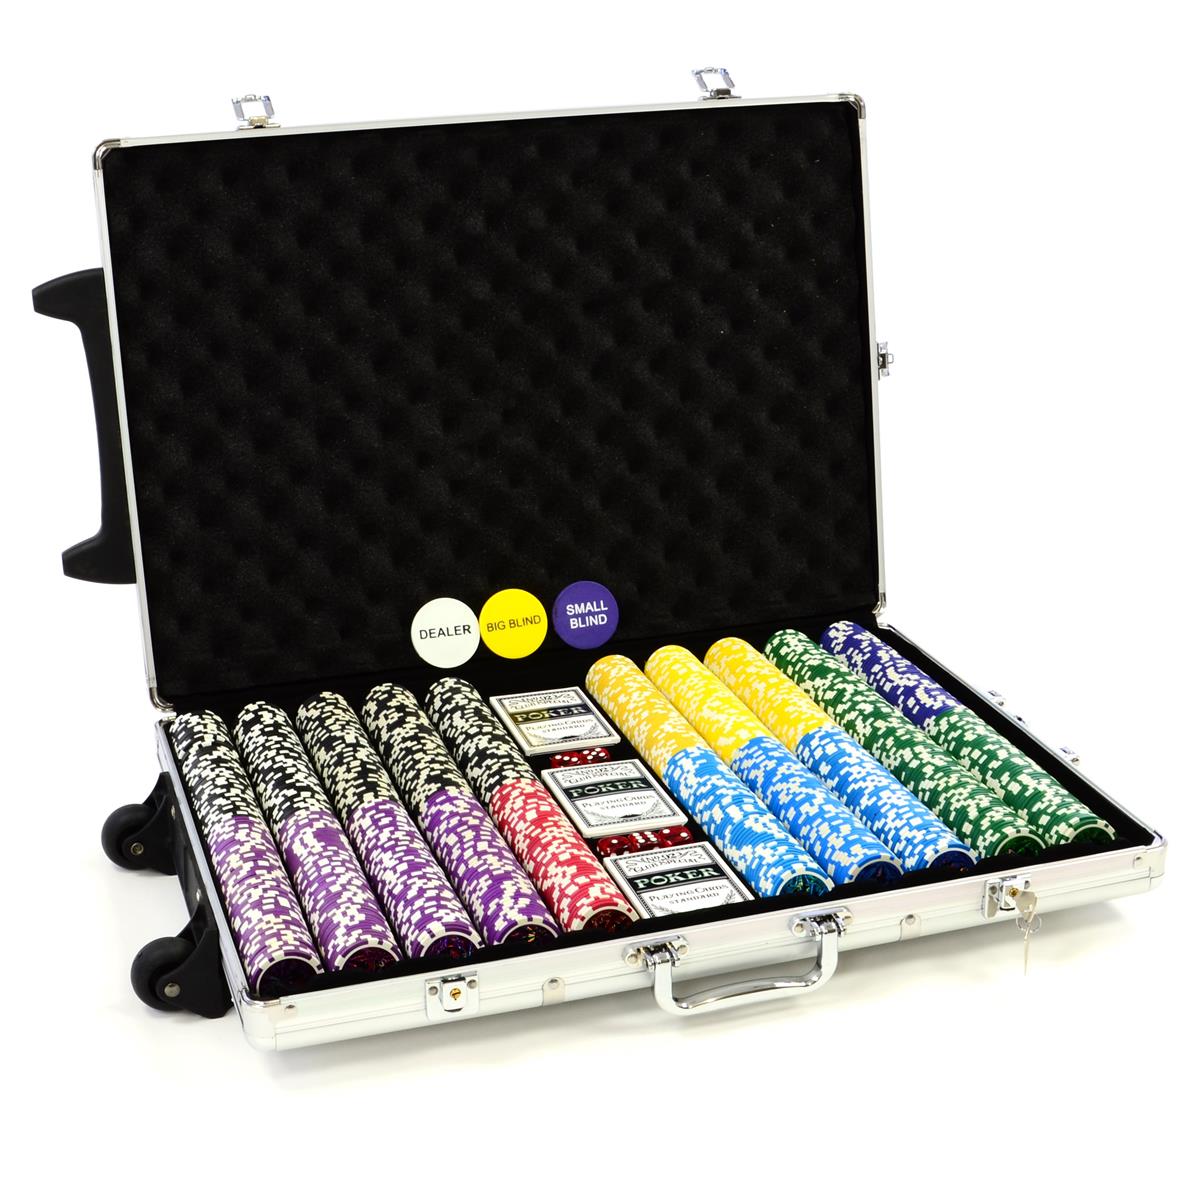 Luxus-Trolley-Pokerkoffer silber mit 1000 Laser Pokerchips und viel Zubehör